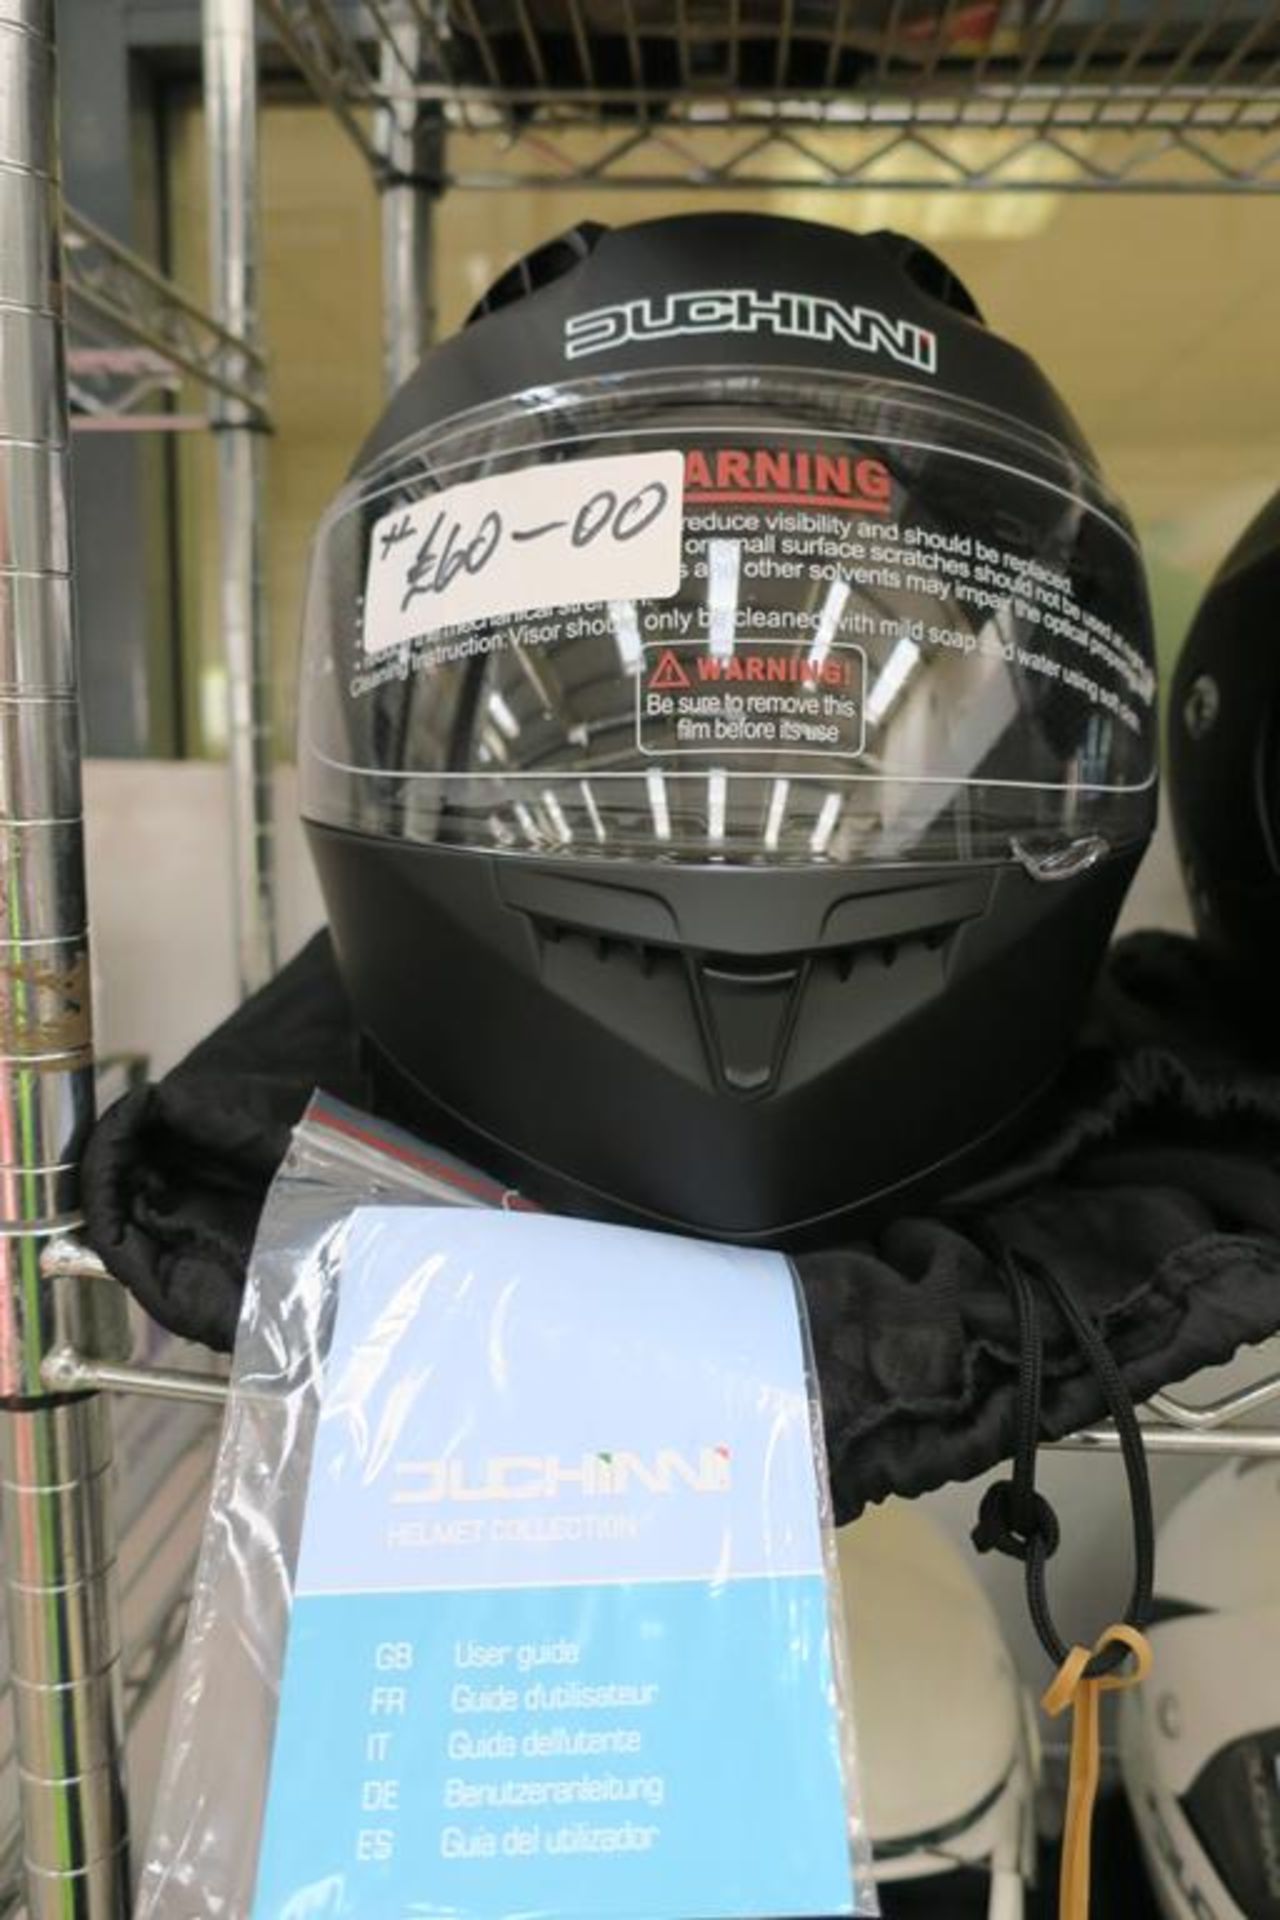 Duchinni YH-FF968 Size XL Helmet comes with Duchinni Bag